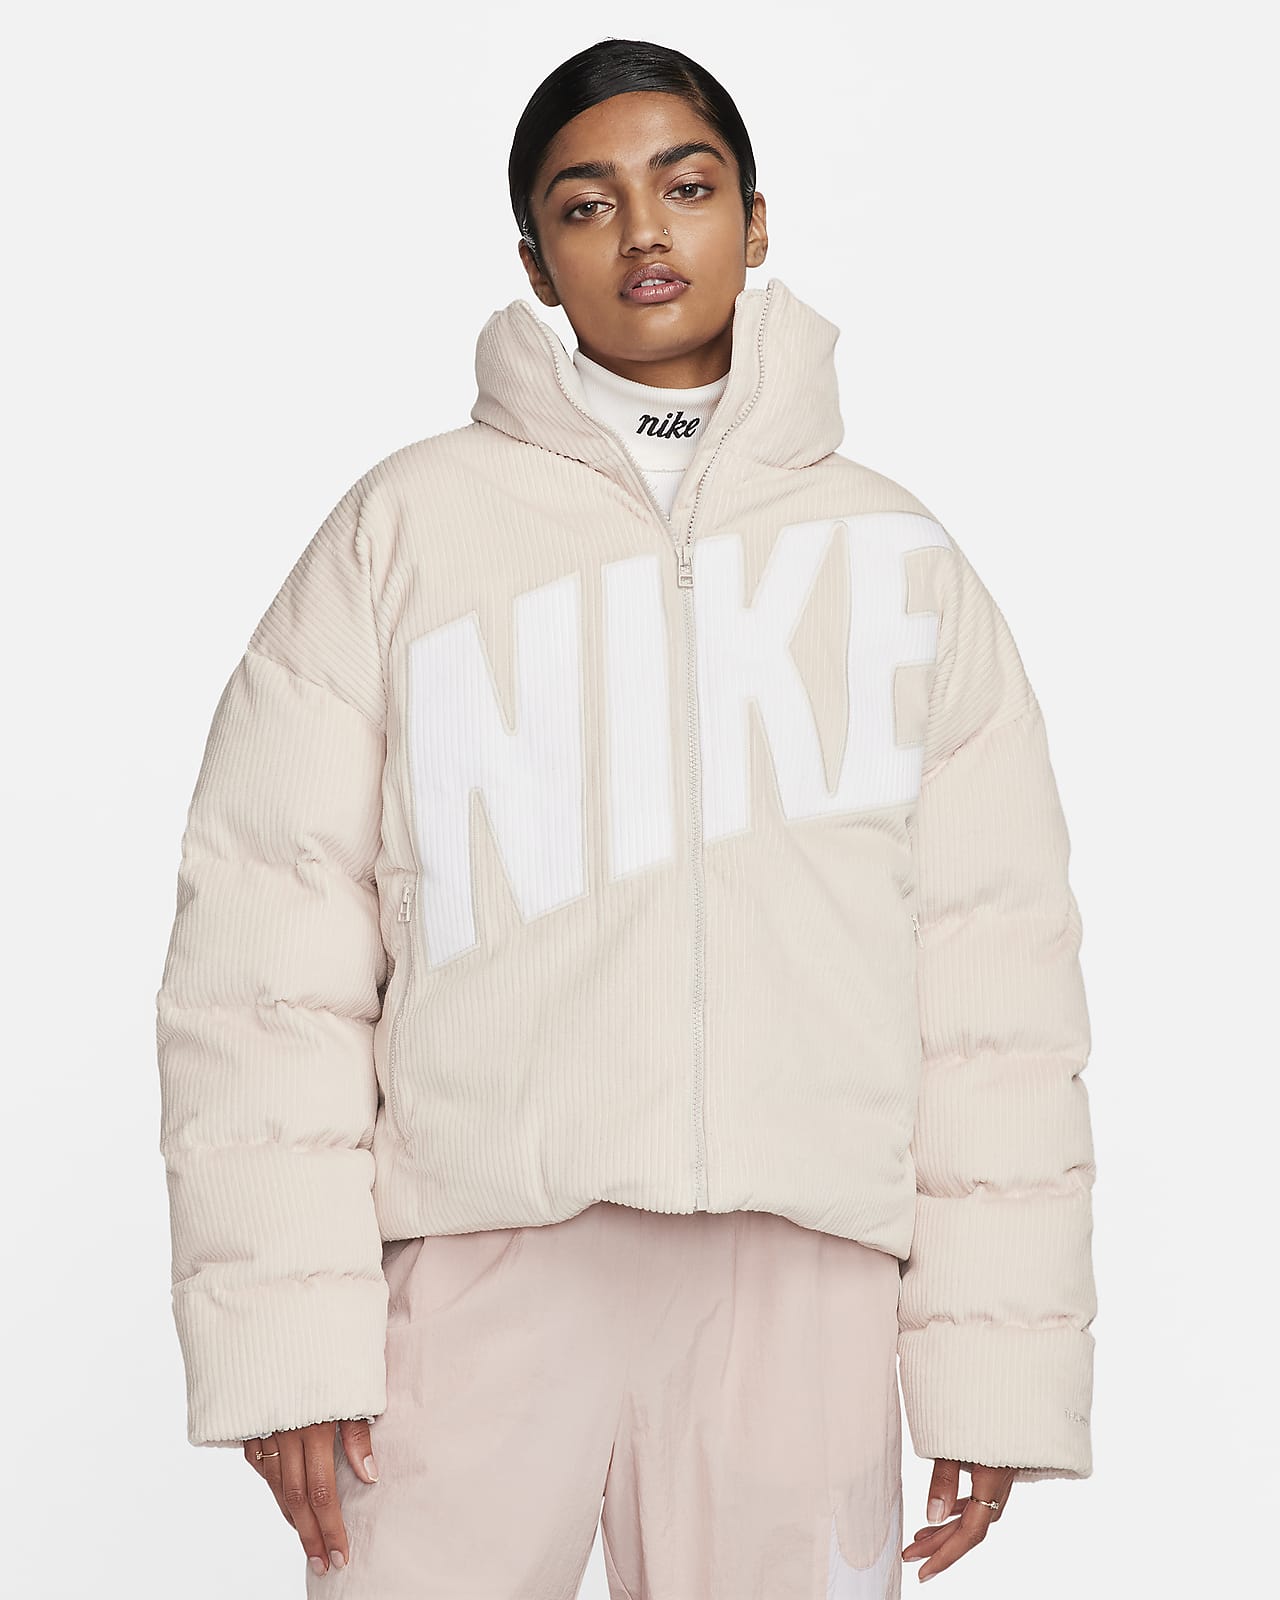 Γυναικείο φουσκωτό μπουφάν κοτλέ σε φαρδιά γραμμή Therma-FIT Nike Sportswear